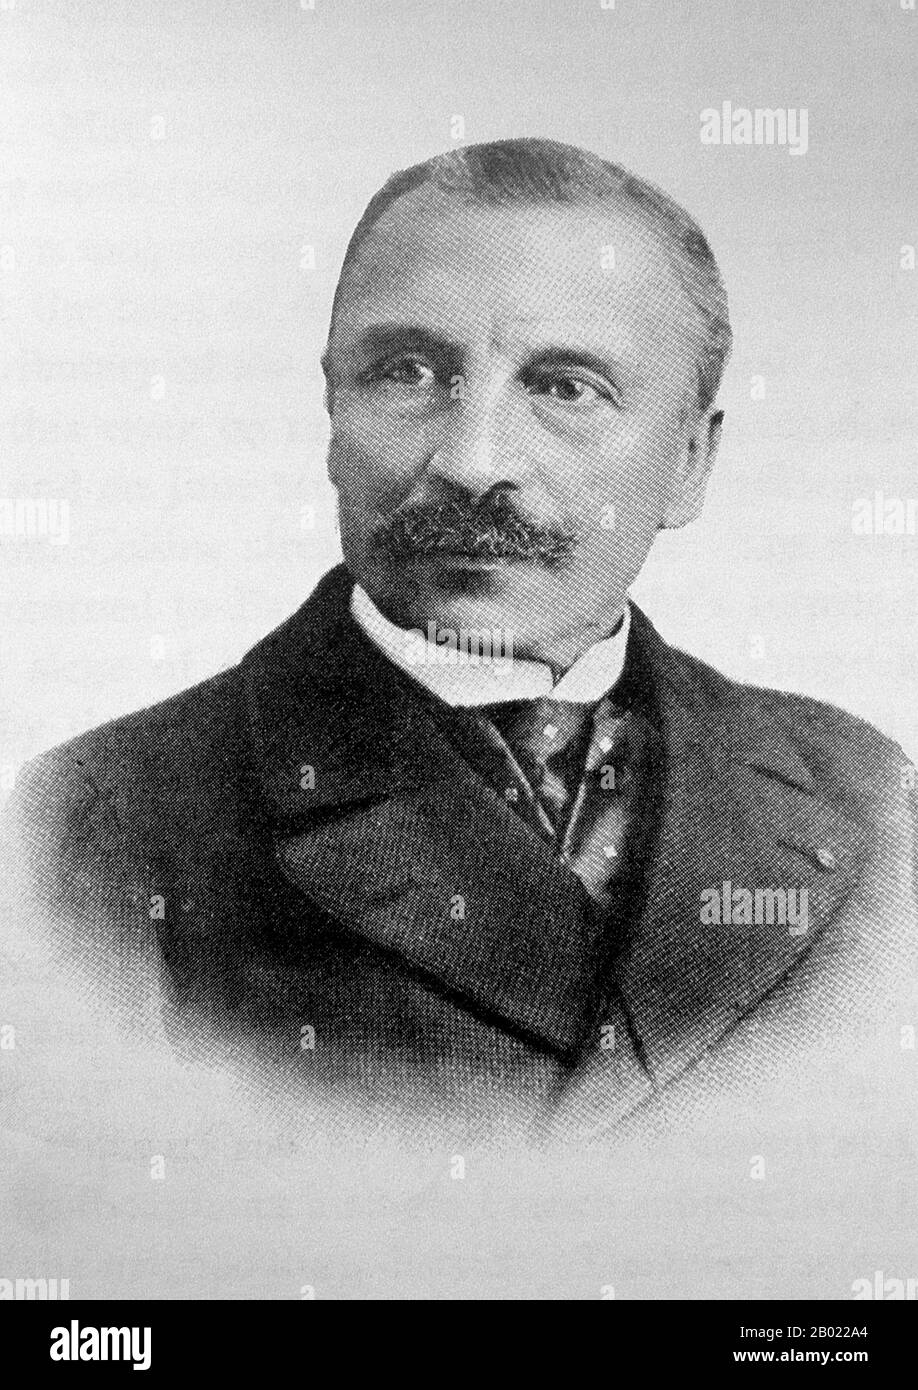 Auguste Pavie (1847 - 1925) è stato il padre fondatore dell'influenza francese nel Laos. Dopo una lunga carriera in Cambogia e Cochinchina, Pavie divenne il primo vice-console francese a Luang Prabang nel 1885, diventando infine il primo governatore generale e plenipotenziario della colonia francese del Laos. Foto Stock